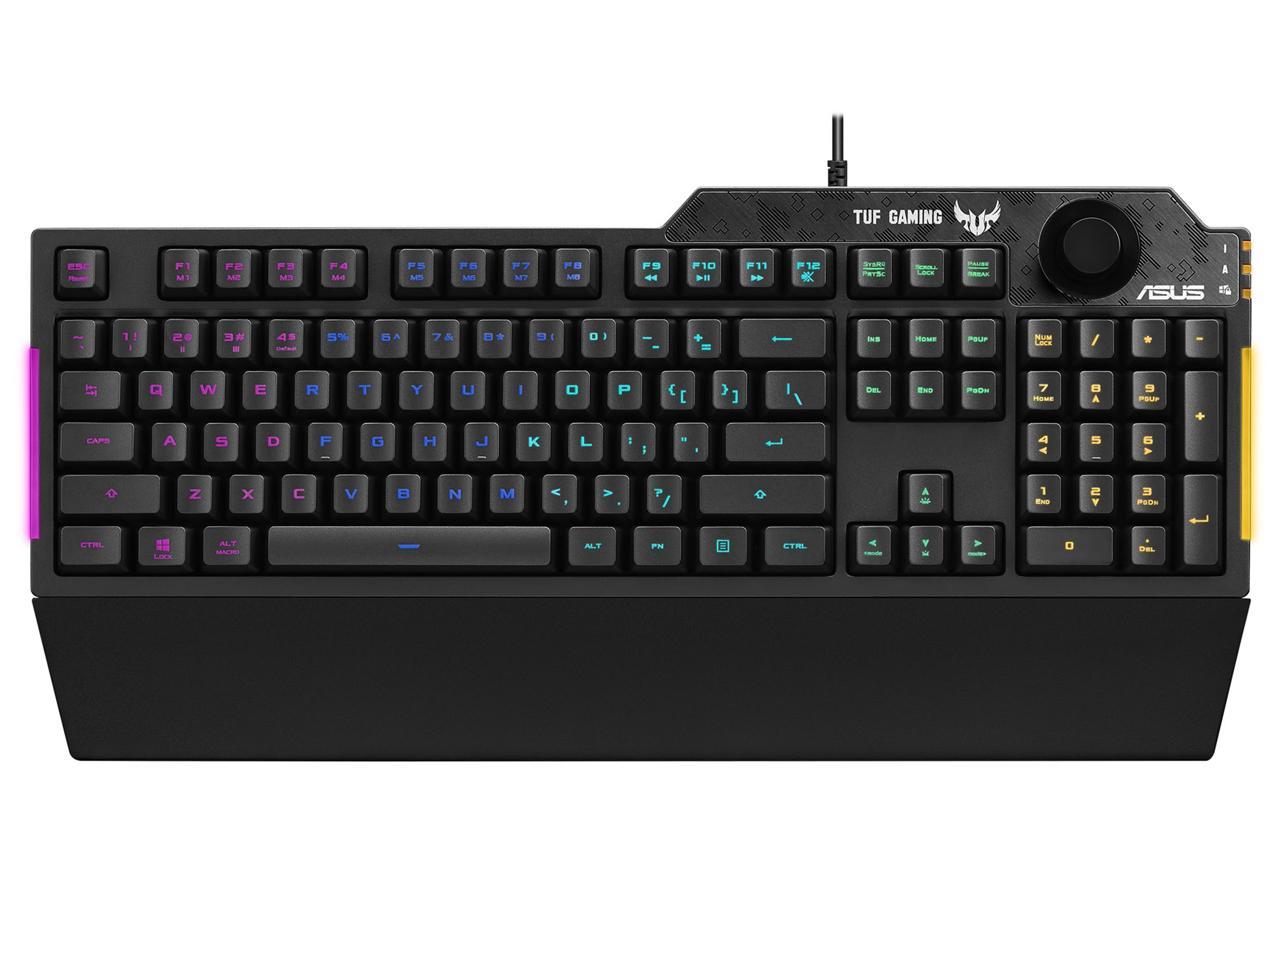 ASUS RA04 TUF Gaming K1 Membrane Gaming Keyboard $45 + Free Shipping